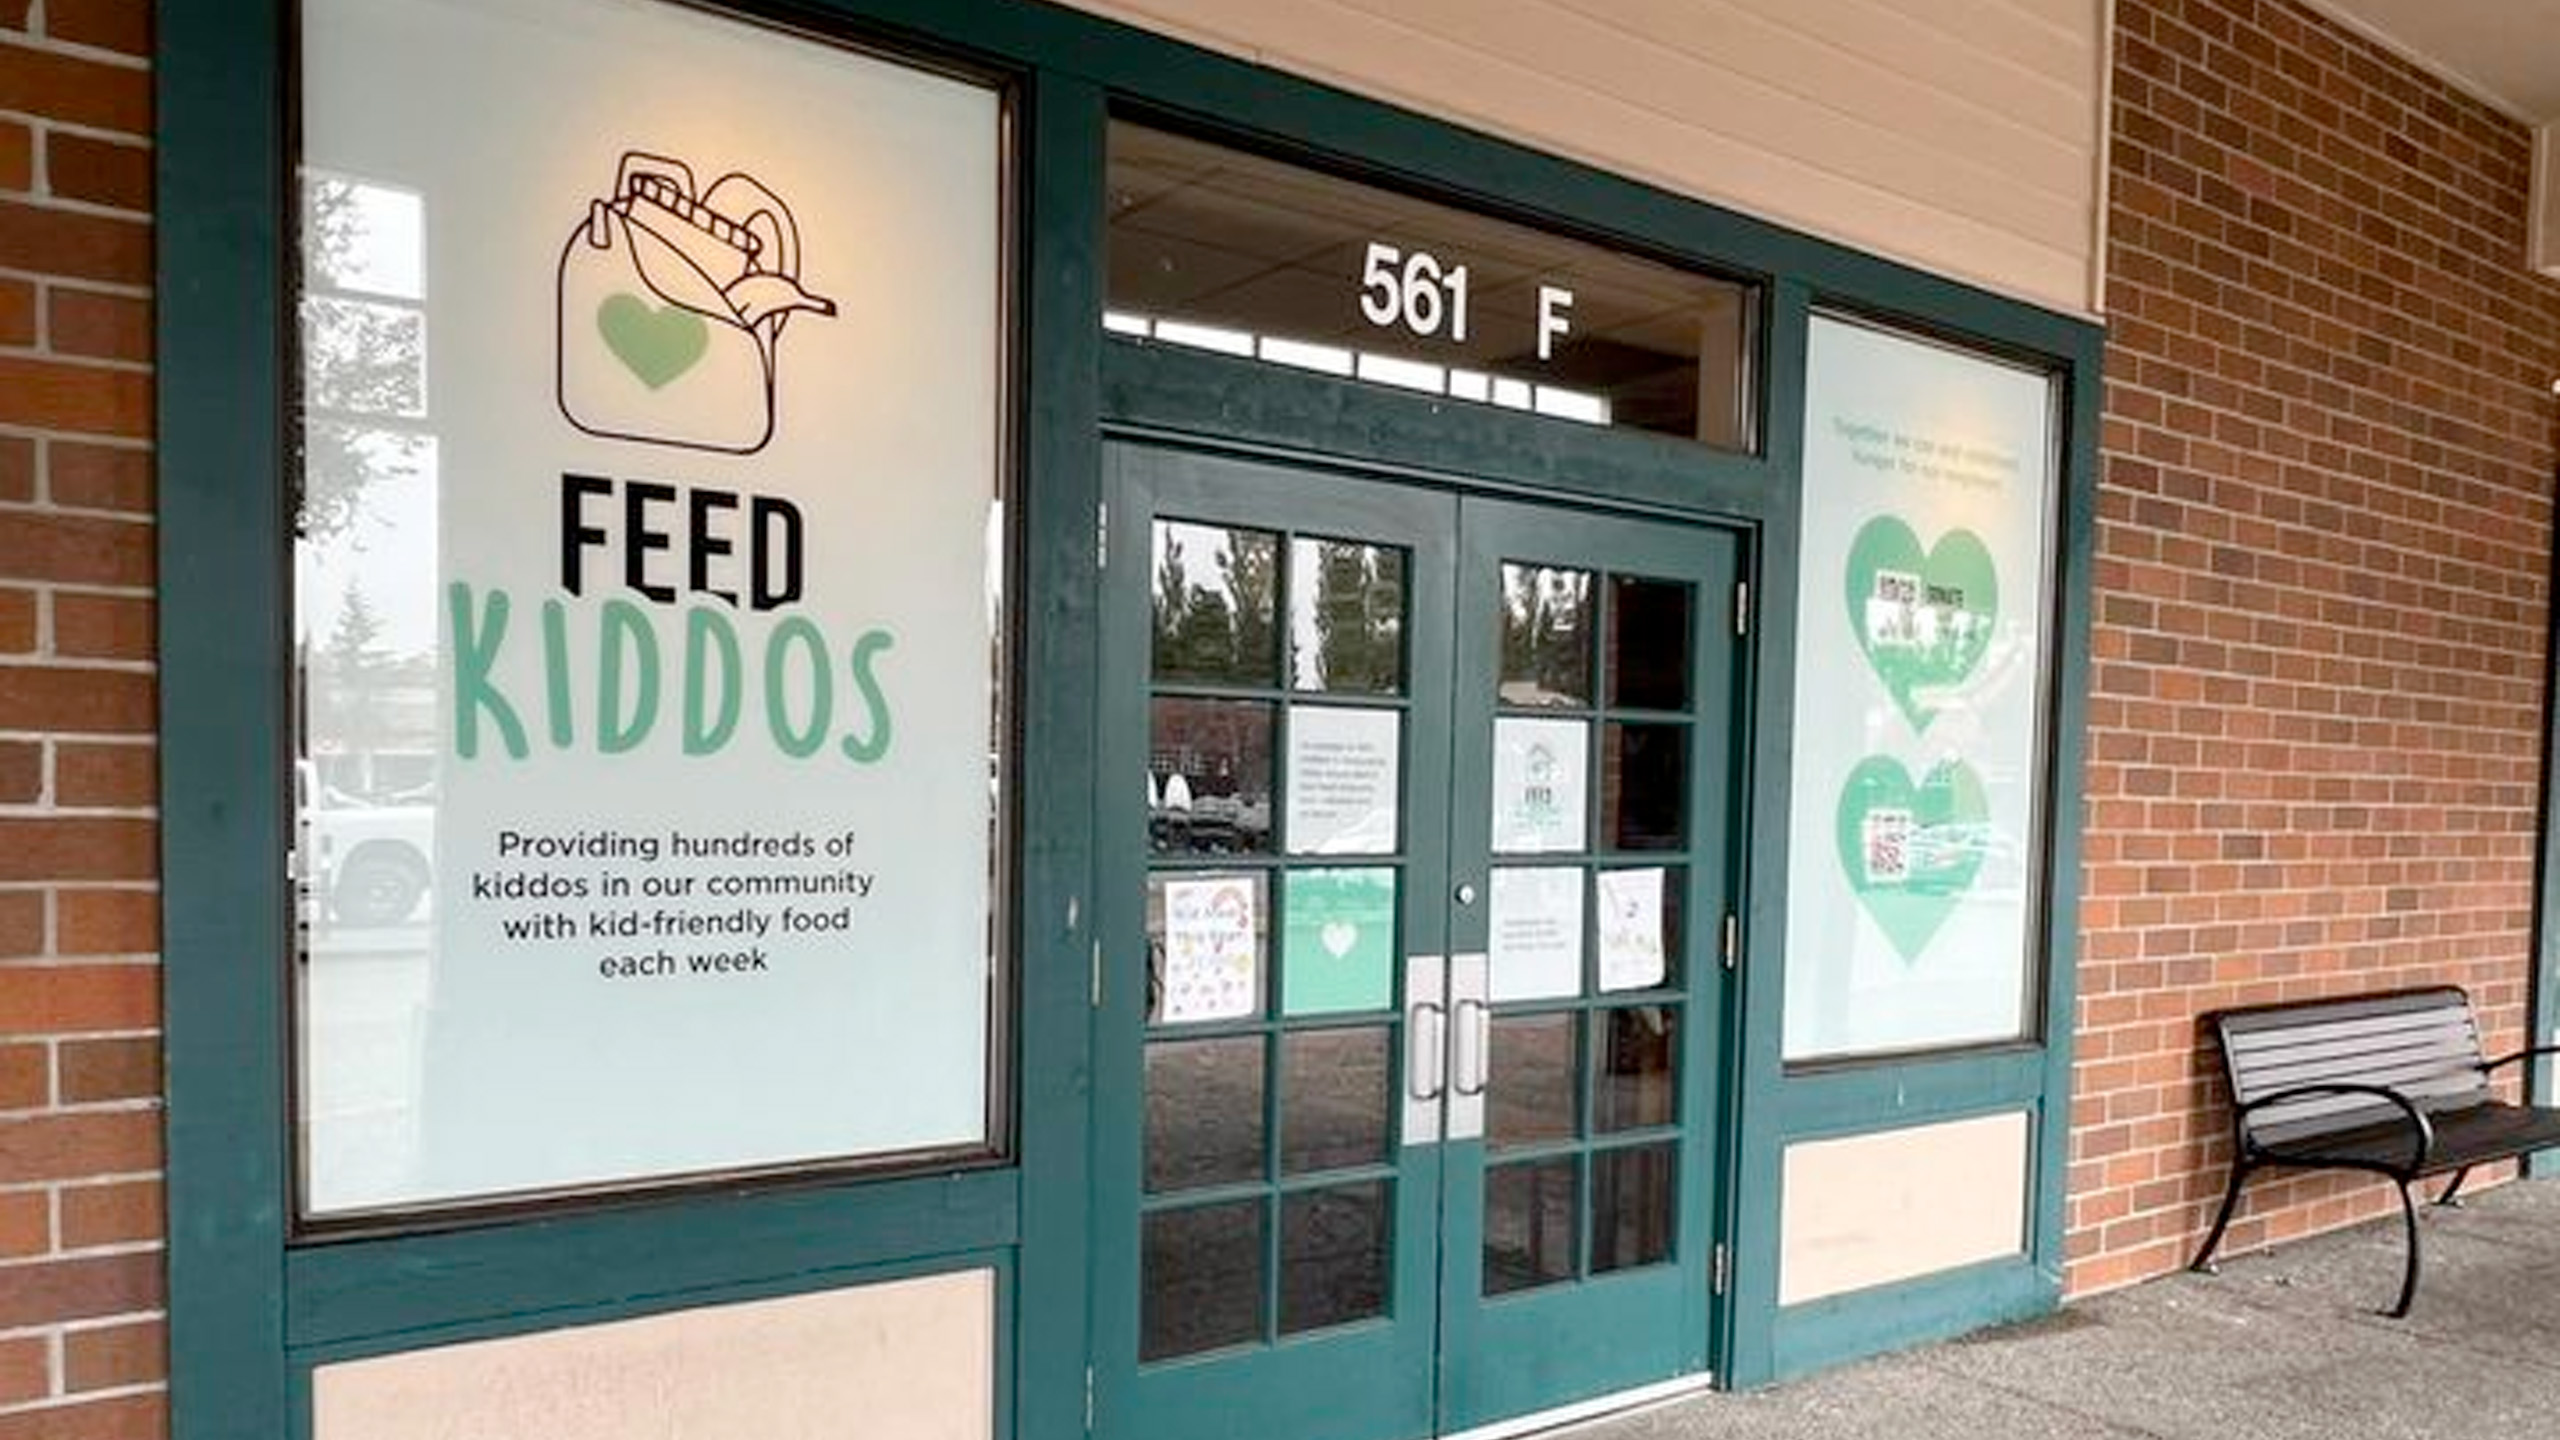 Feed Kiddos Donation Center Signage 2560x1440 1